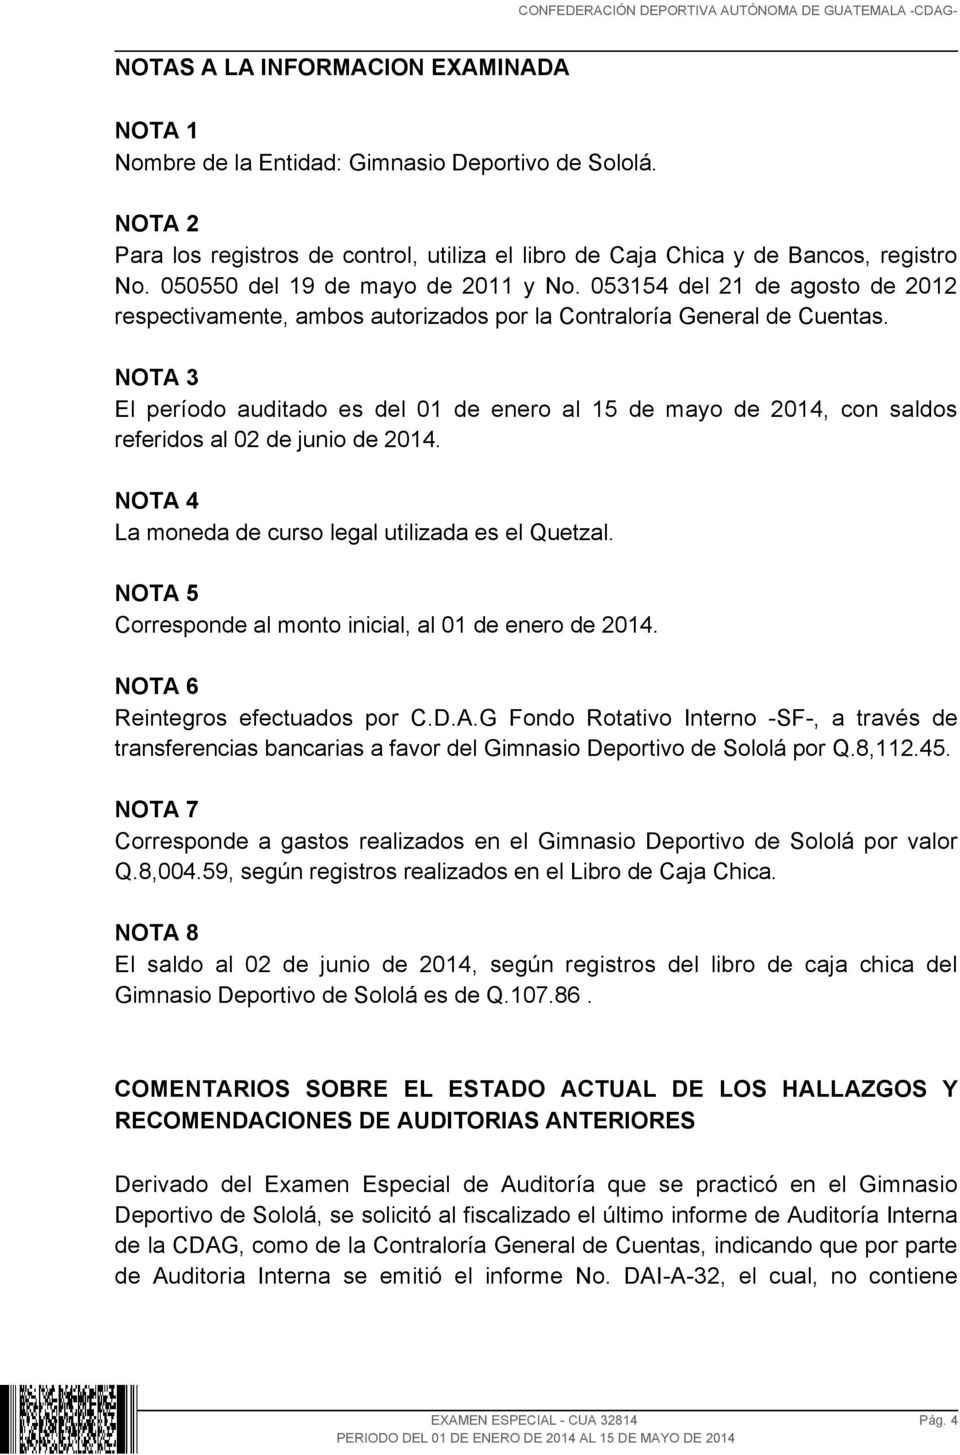 NOTA 3 El período auditado es del 01 de enero al 15 de mayo de 2014, con saldos referidos al 02 de junio de 2014. NOTA 4 La moneda de curso legal utilizada es el Quetzal.